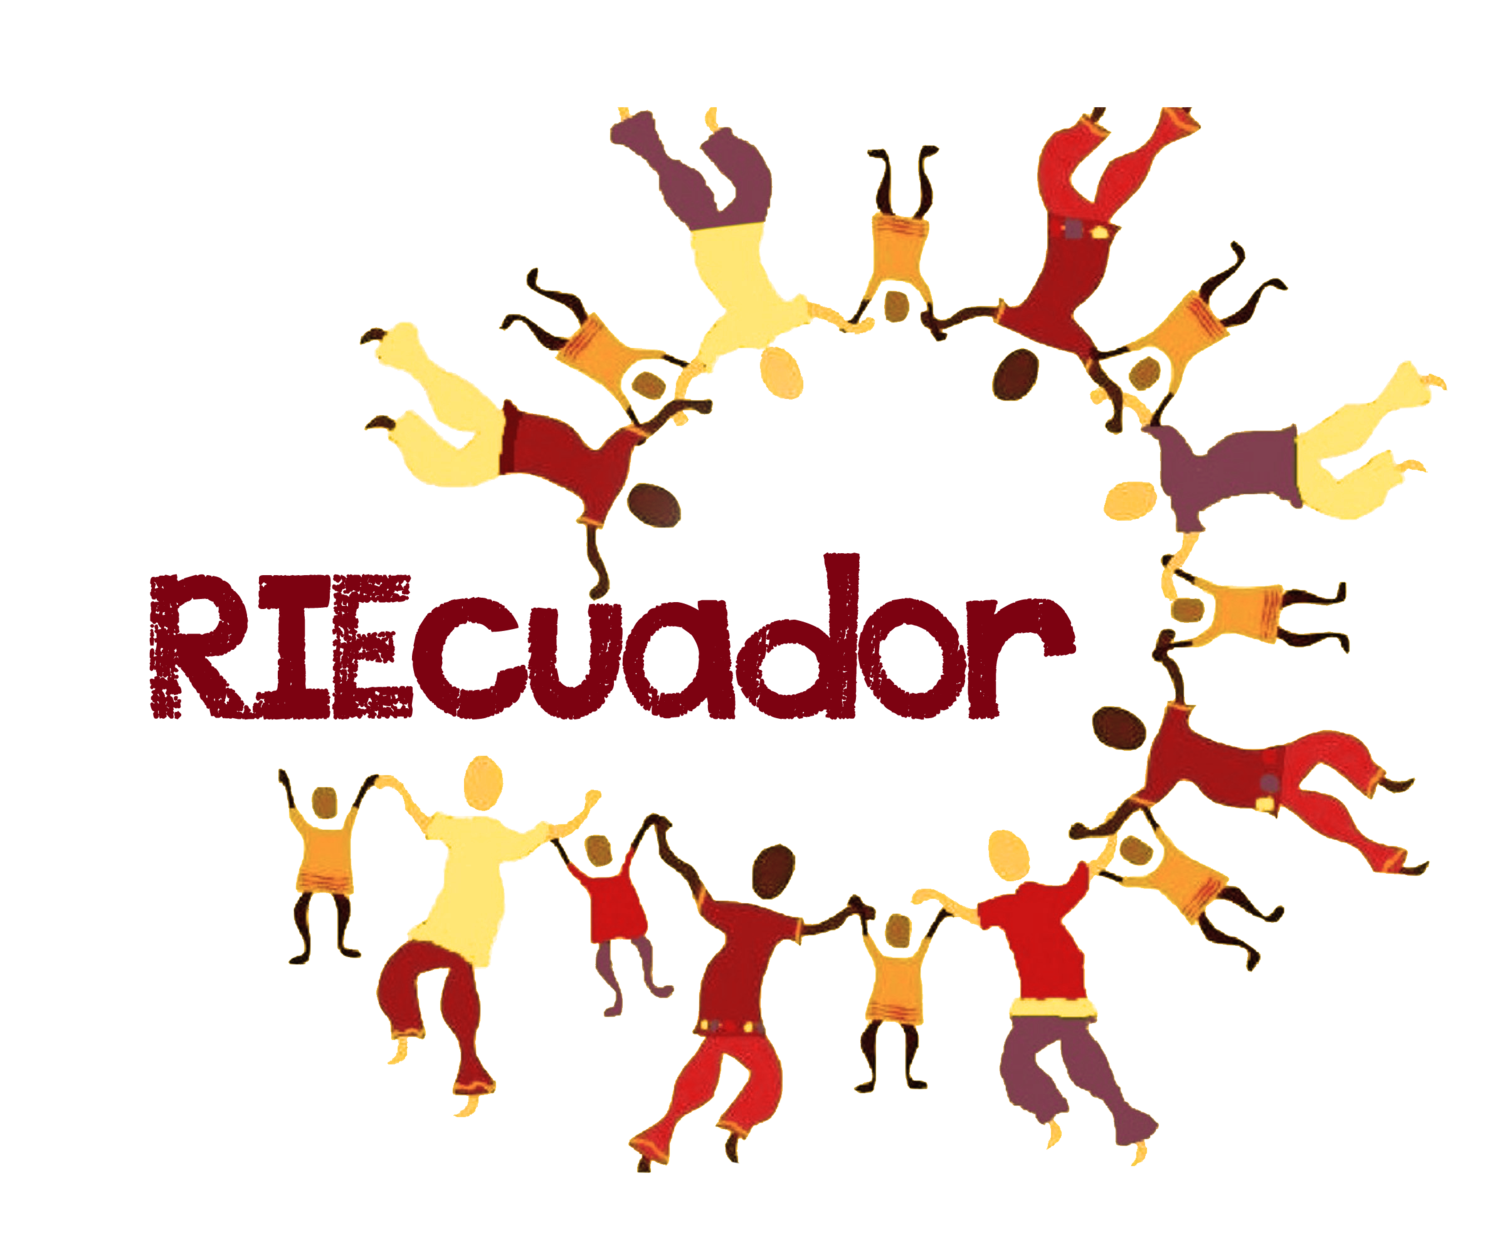 RIEcuador